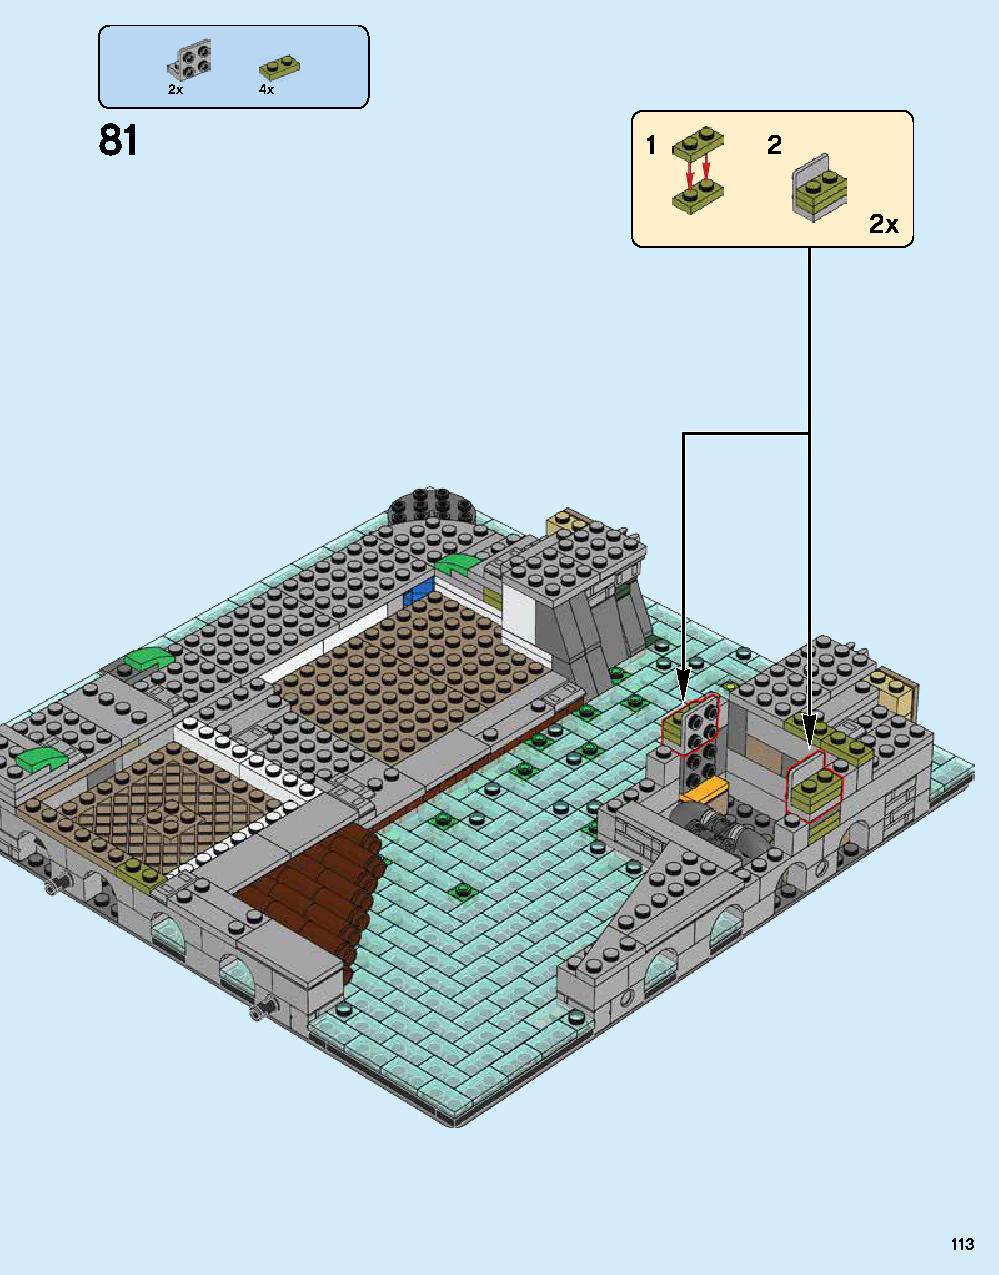 ニンジャゴー シティ 70620 レゴの商品情報 レゴの説明書・組立方法 113 page